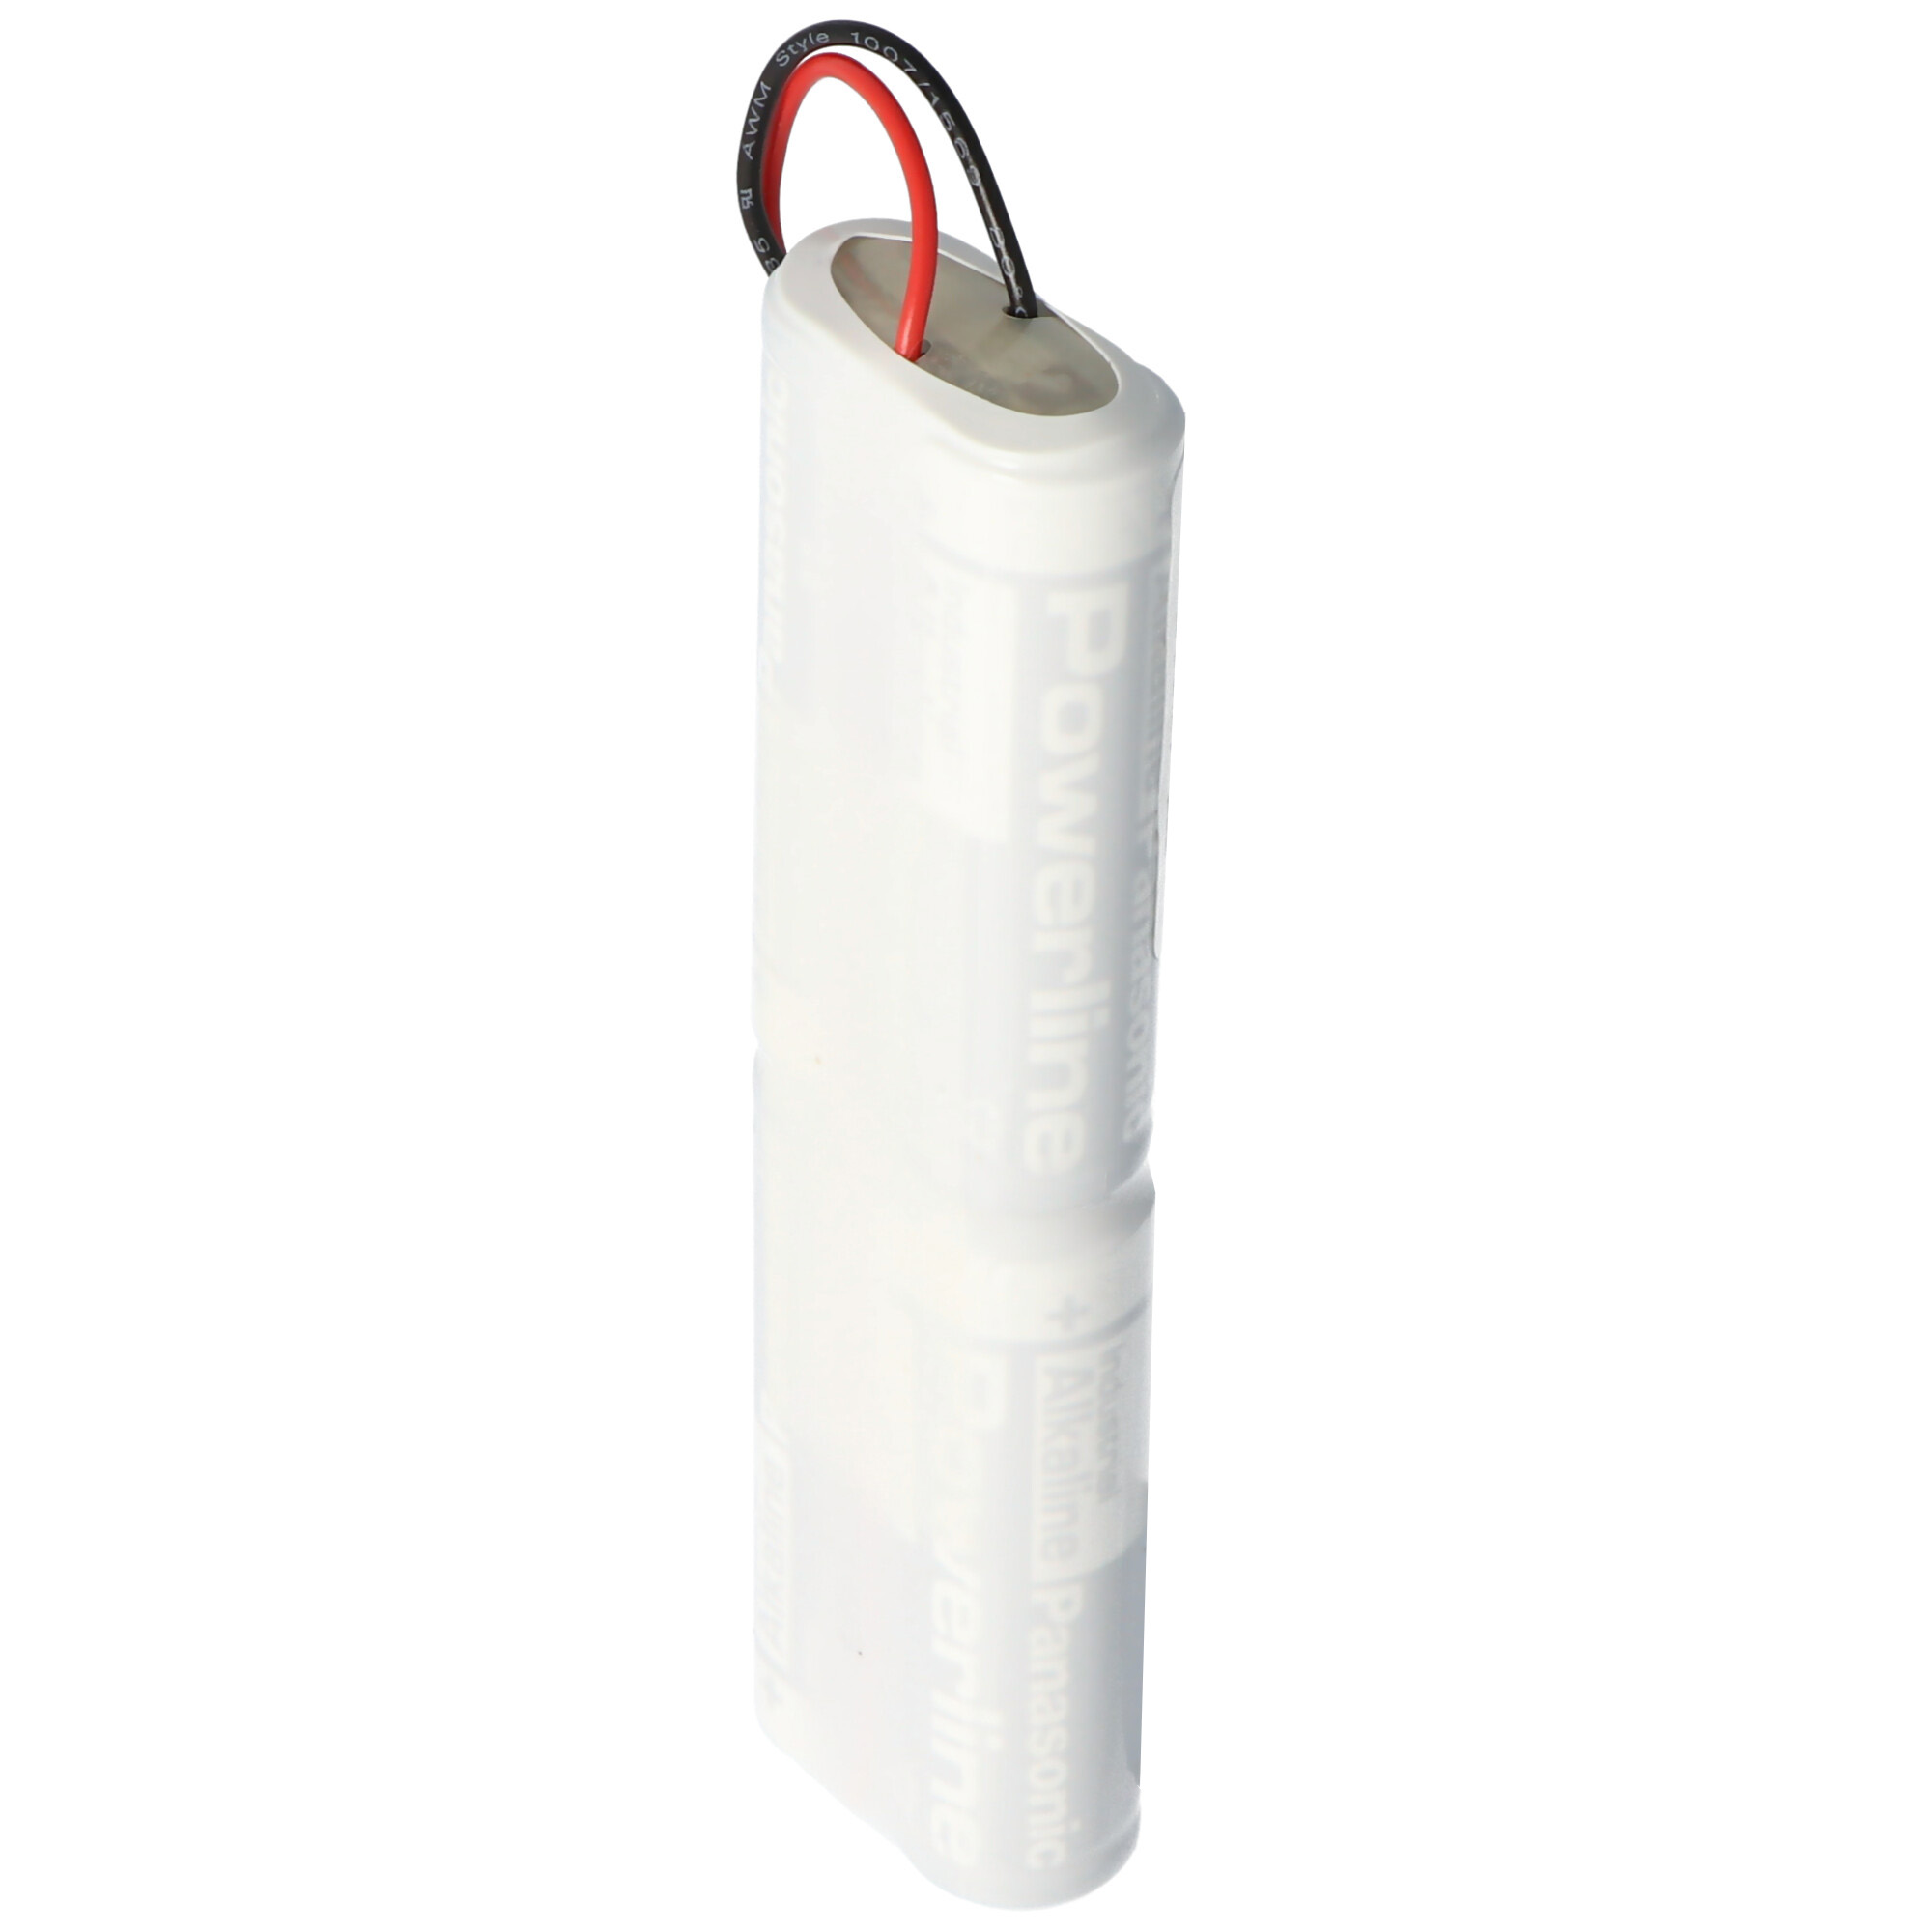 Ersatzbatterie für Schulte Schlagbaum milock Varifree Türöffner ST5/SG 6 Volt Alkaline Batteriepack mit JST SYP02TV Stecker, Abmessungen 101mm x 29mm x 15mm